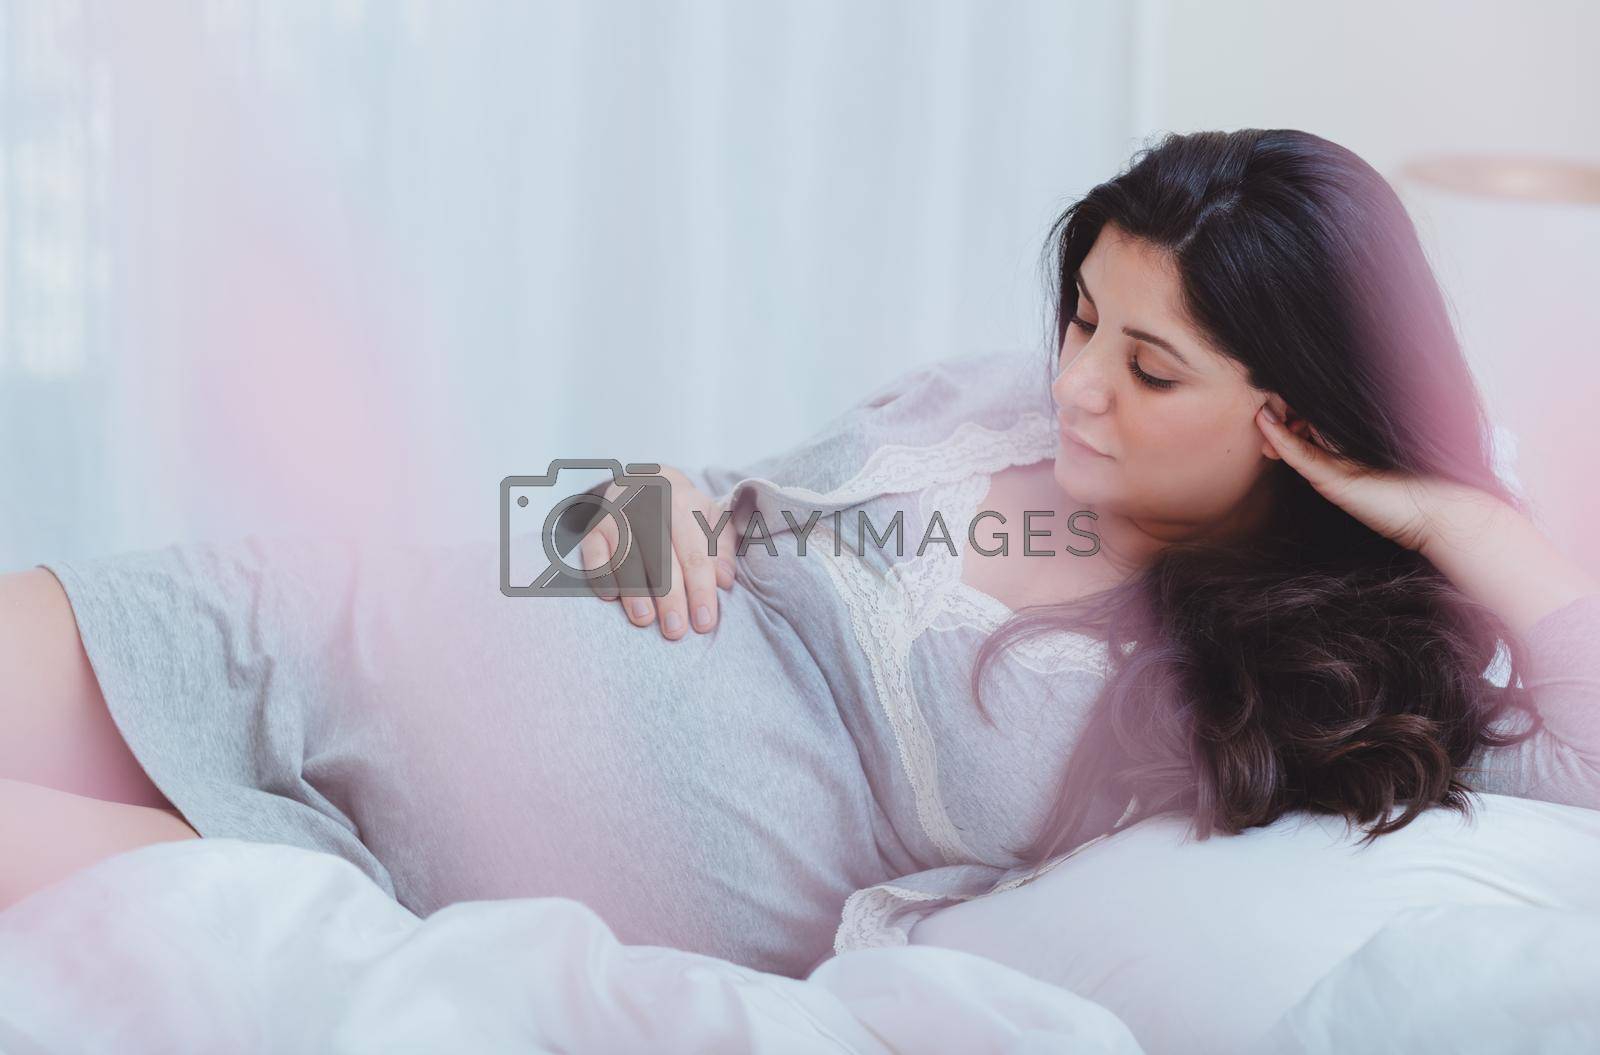 Royalty free image of Happy Female Enjoying Pregnancy by Anna_Omelchenko